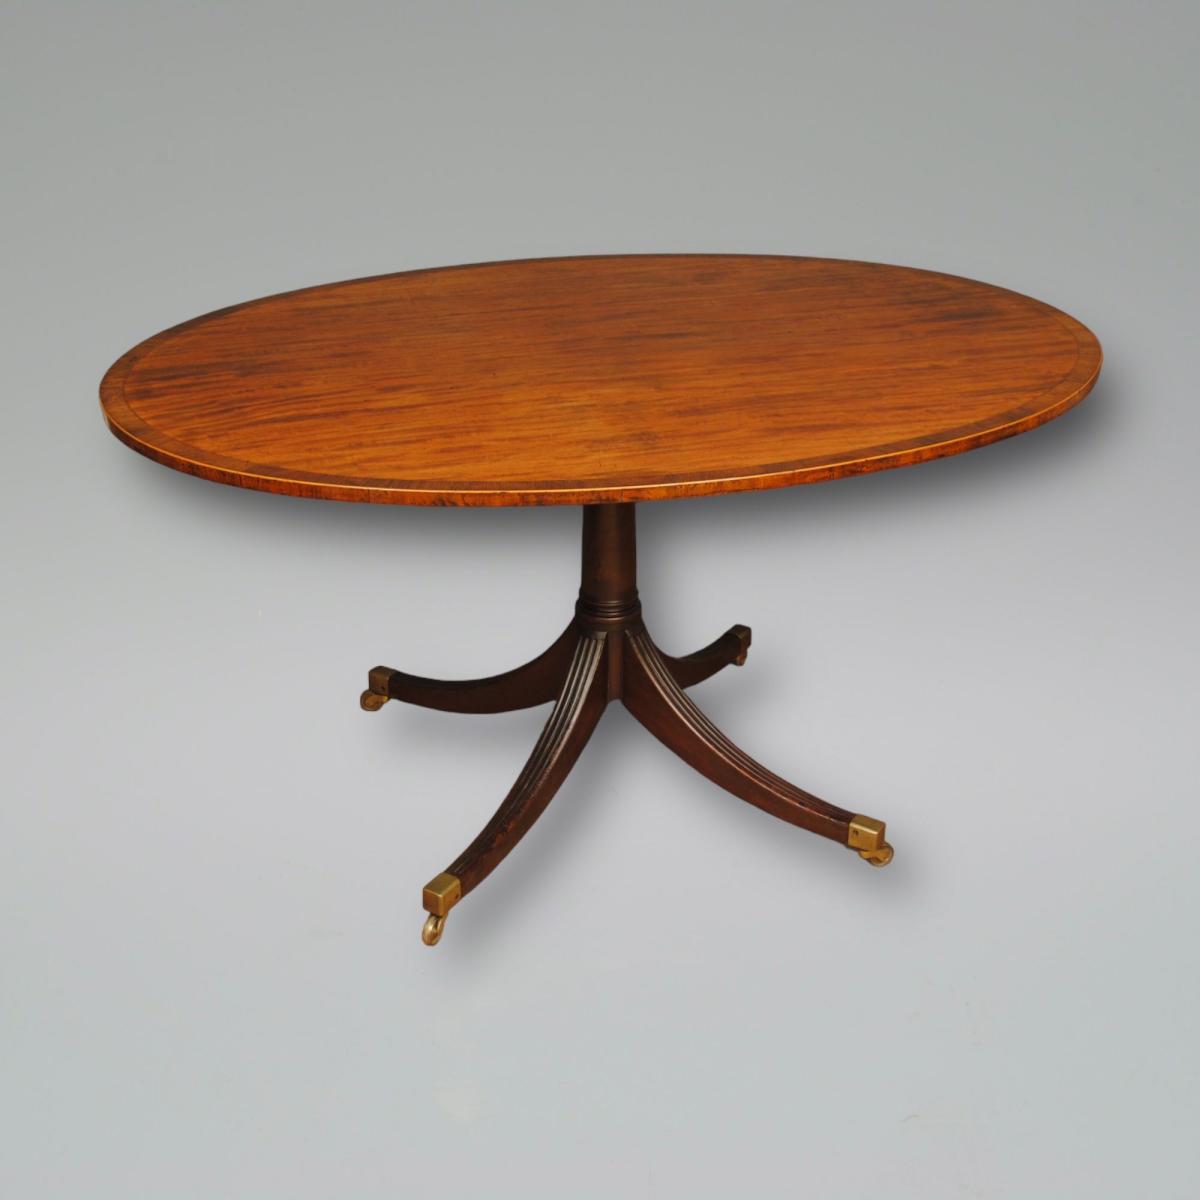 A Late 18th Century Oval Mahogany Breakfast Table